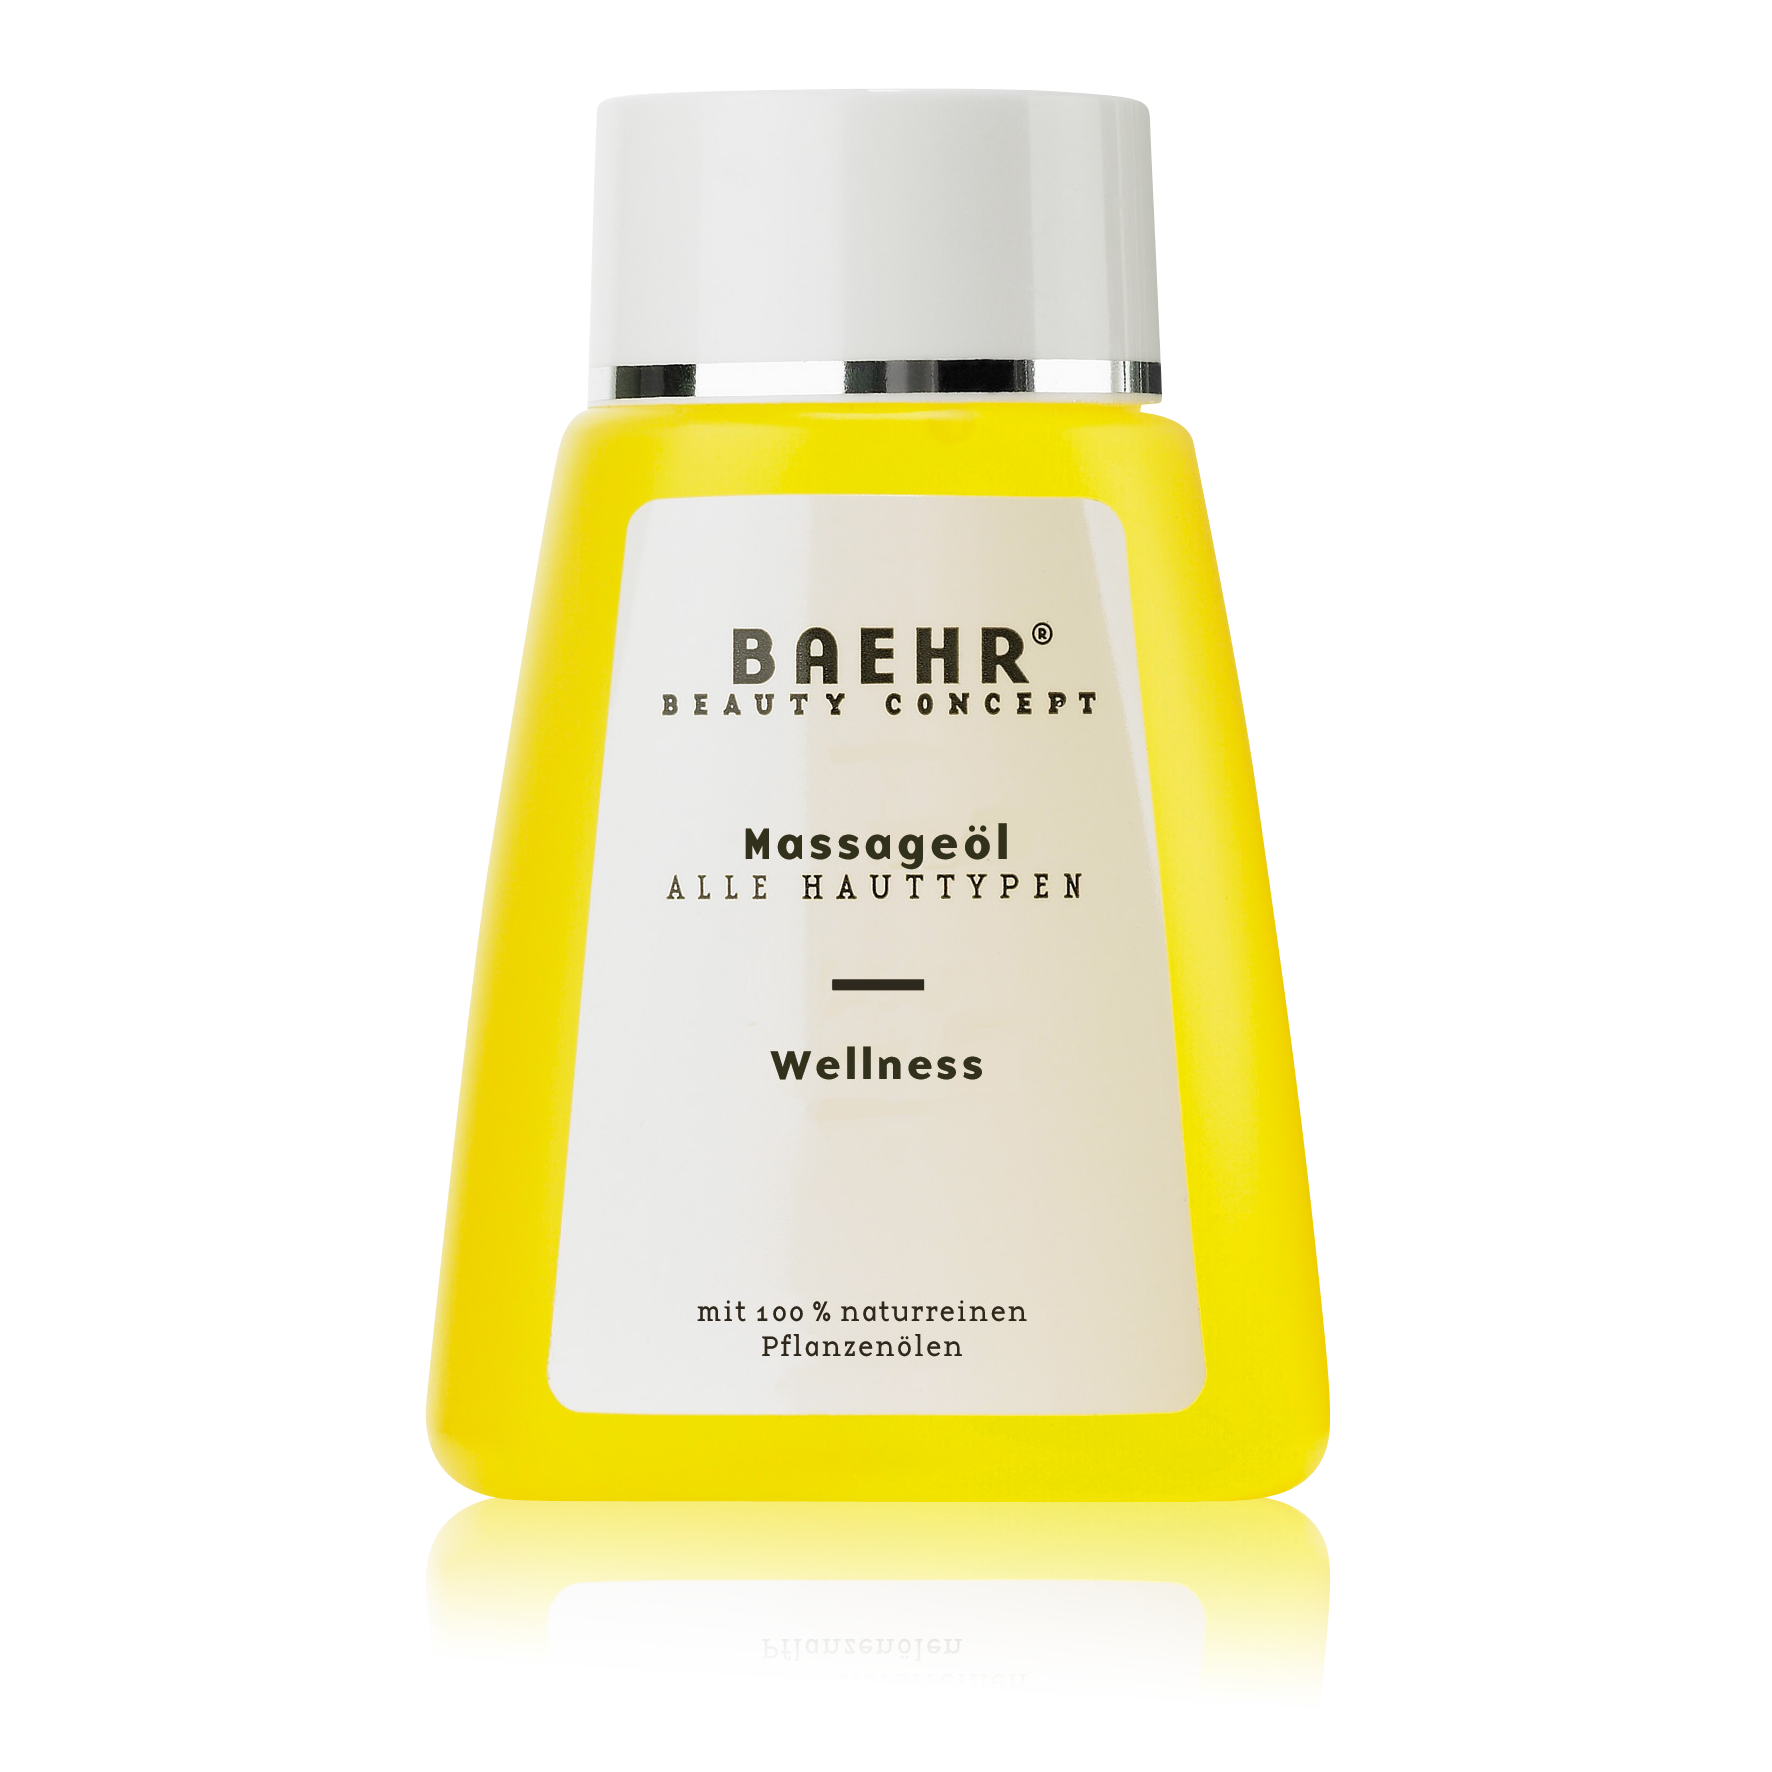 BAEHR BEAUTY CONCEPT Massageöl Wellness Flasche 100 ml